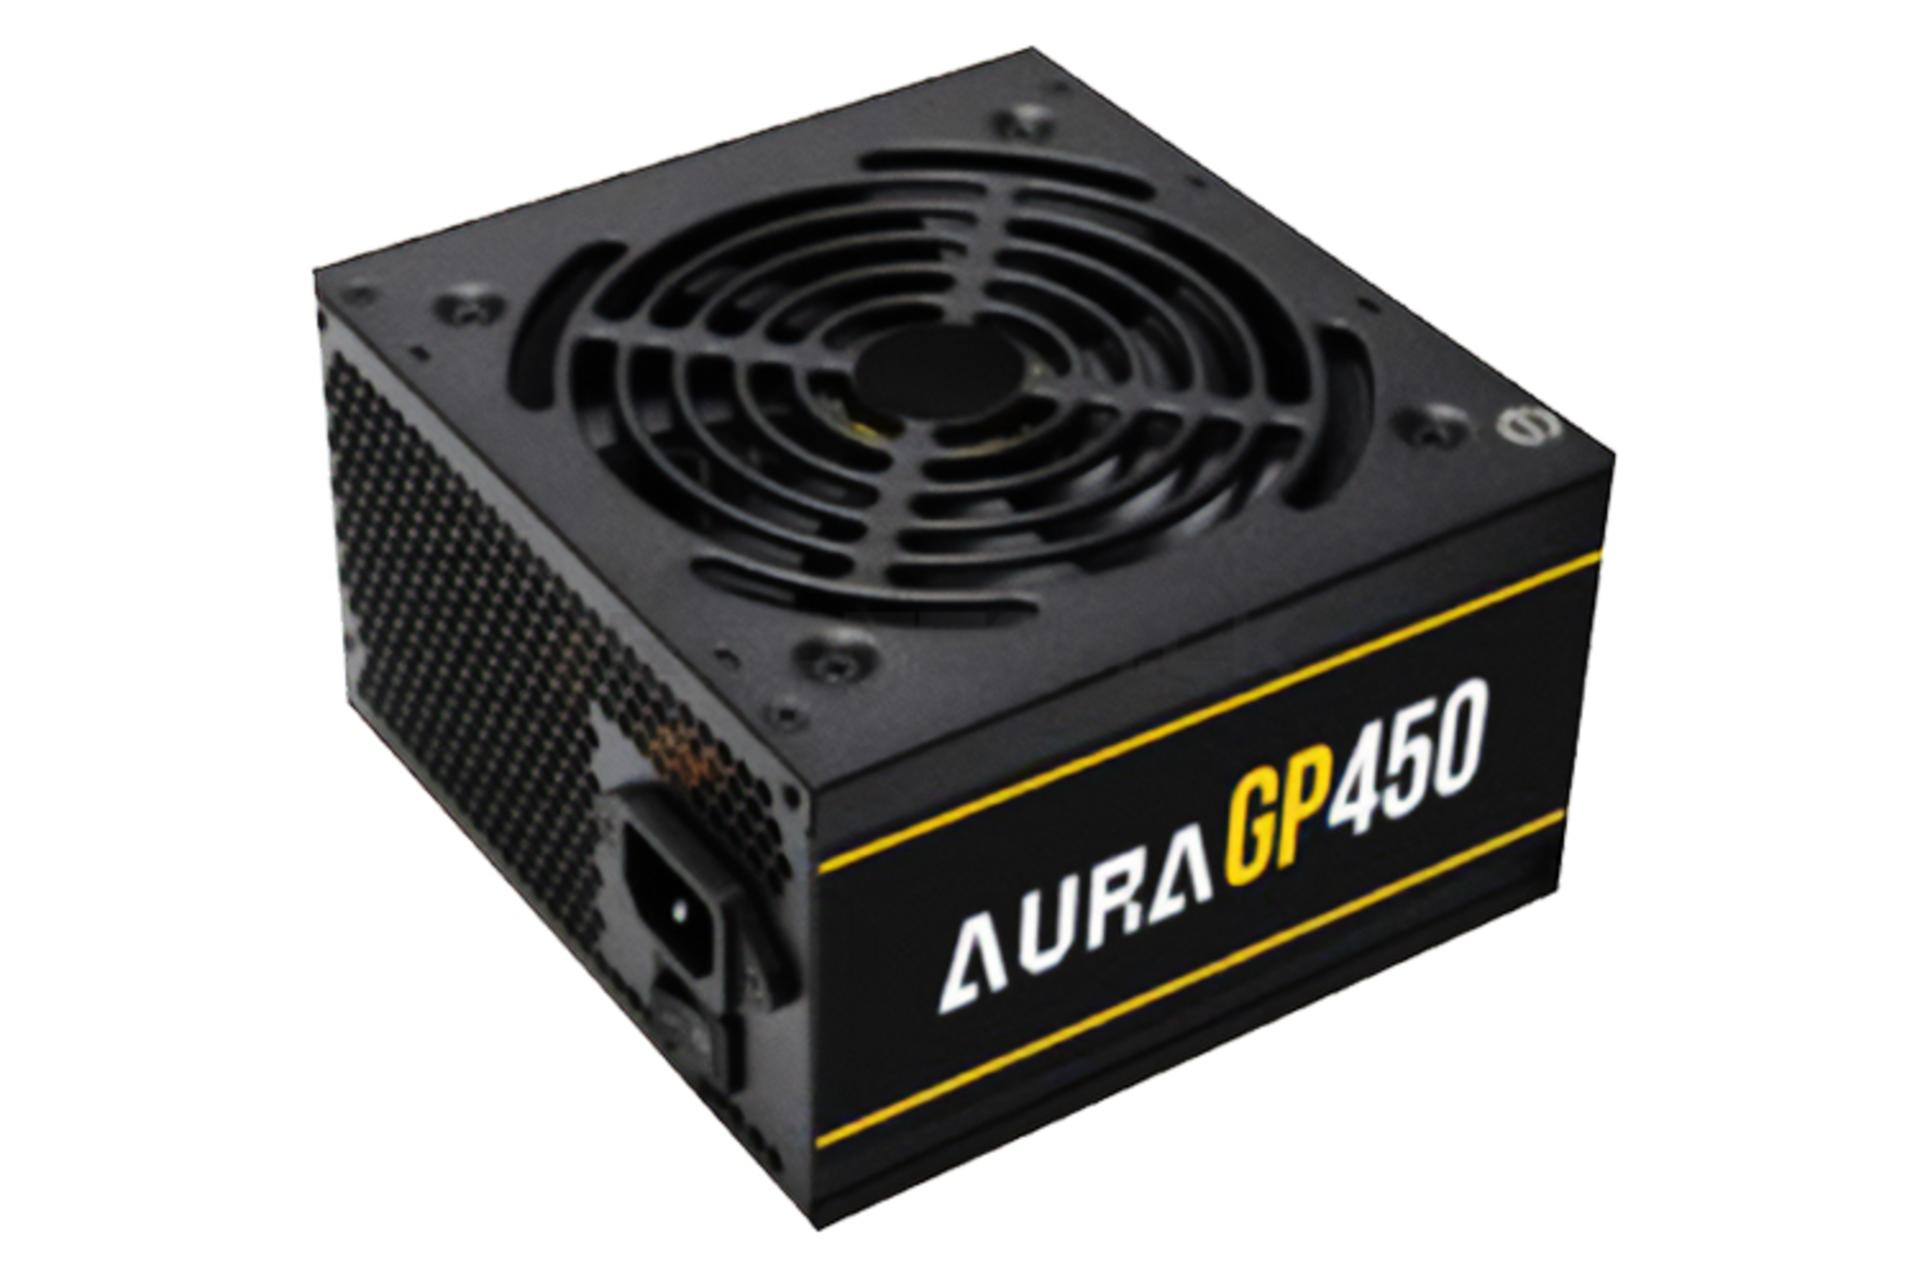 ابعاد پاور کامپیوتر گیم دیاس AURA GP450 با توان 450 وات